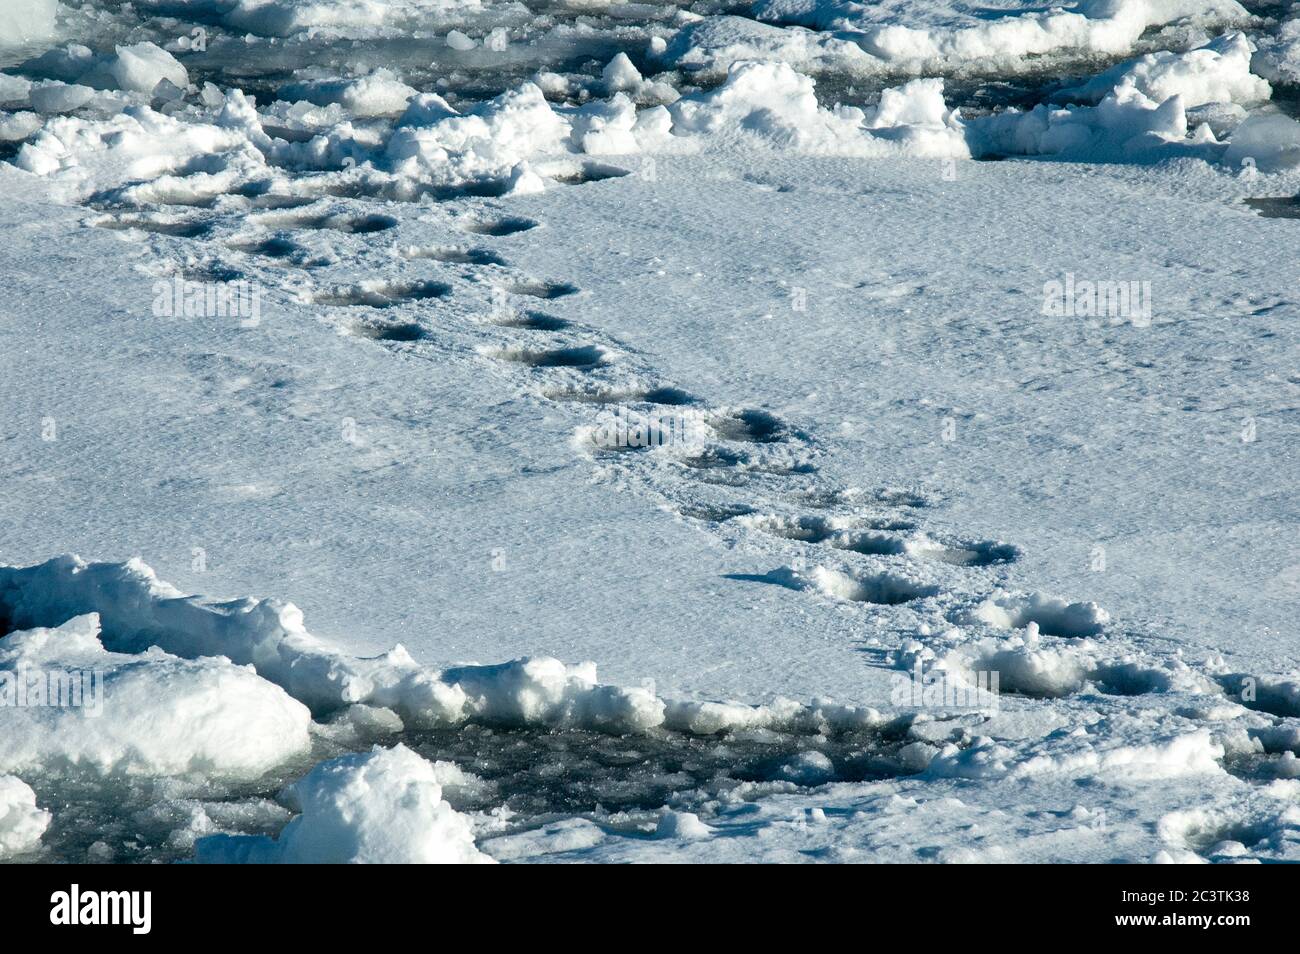 Ours polaire (Ursus maritimus), pistes dans la neige, Norvège, Svalbard Banque D'Images